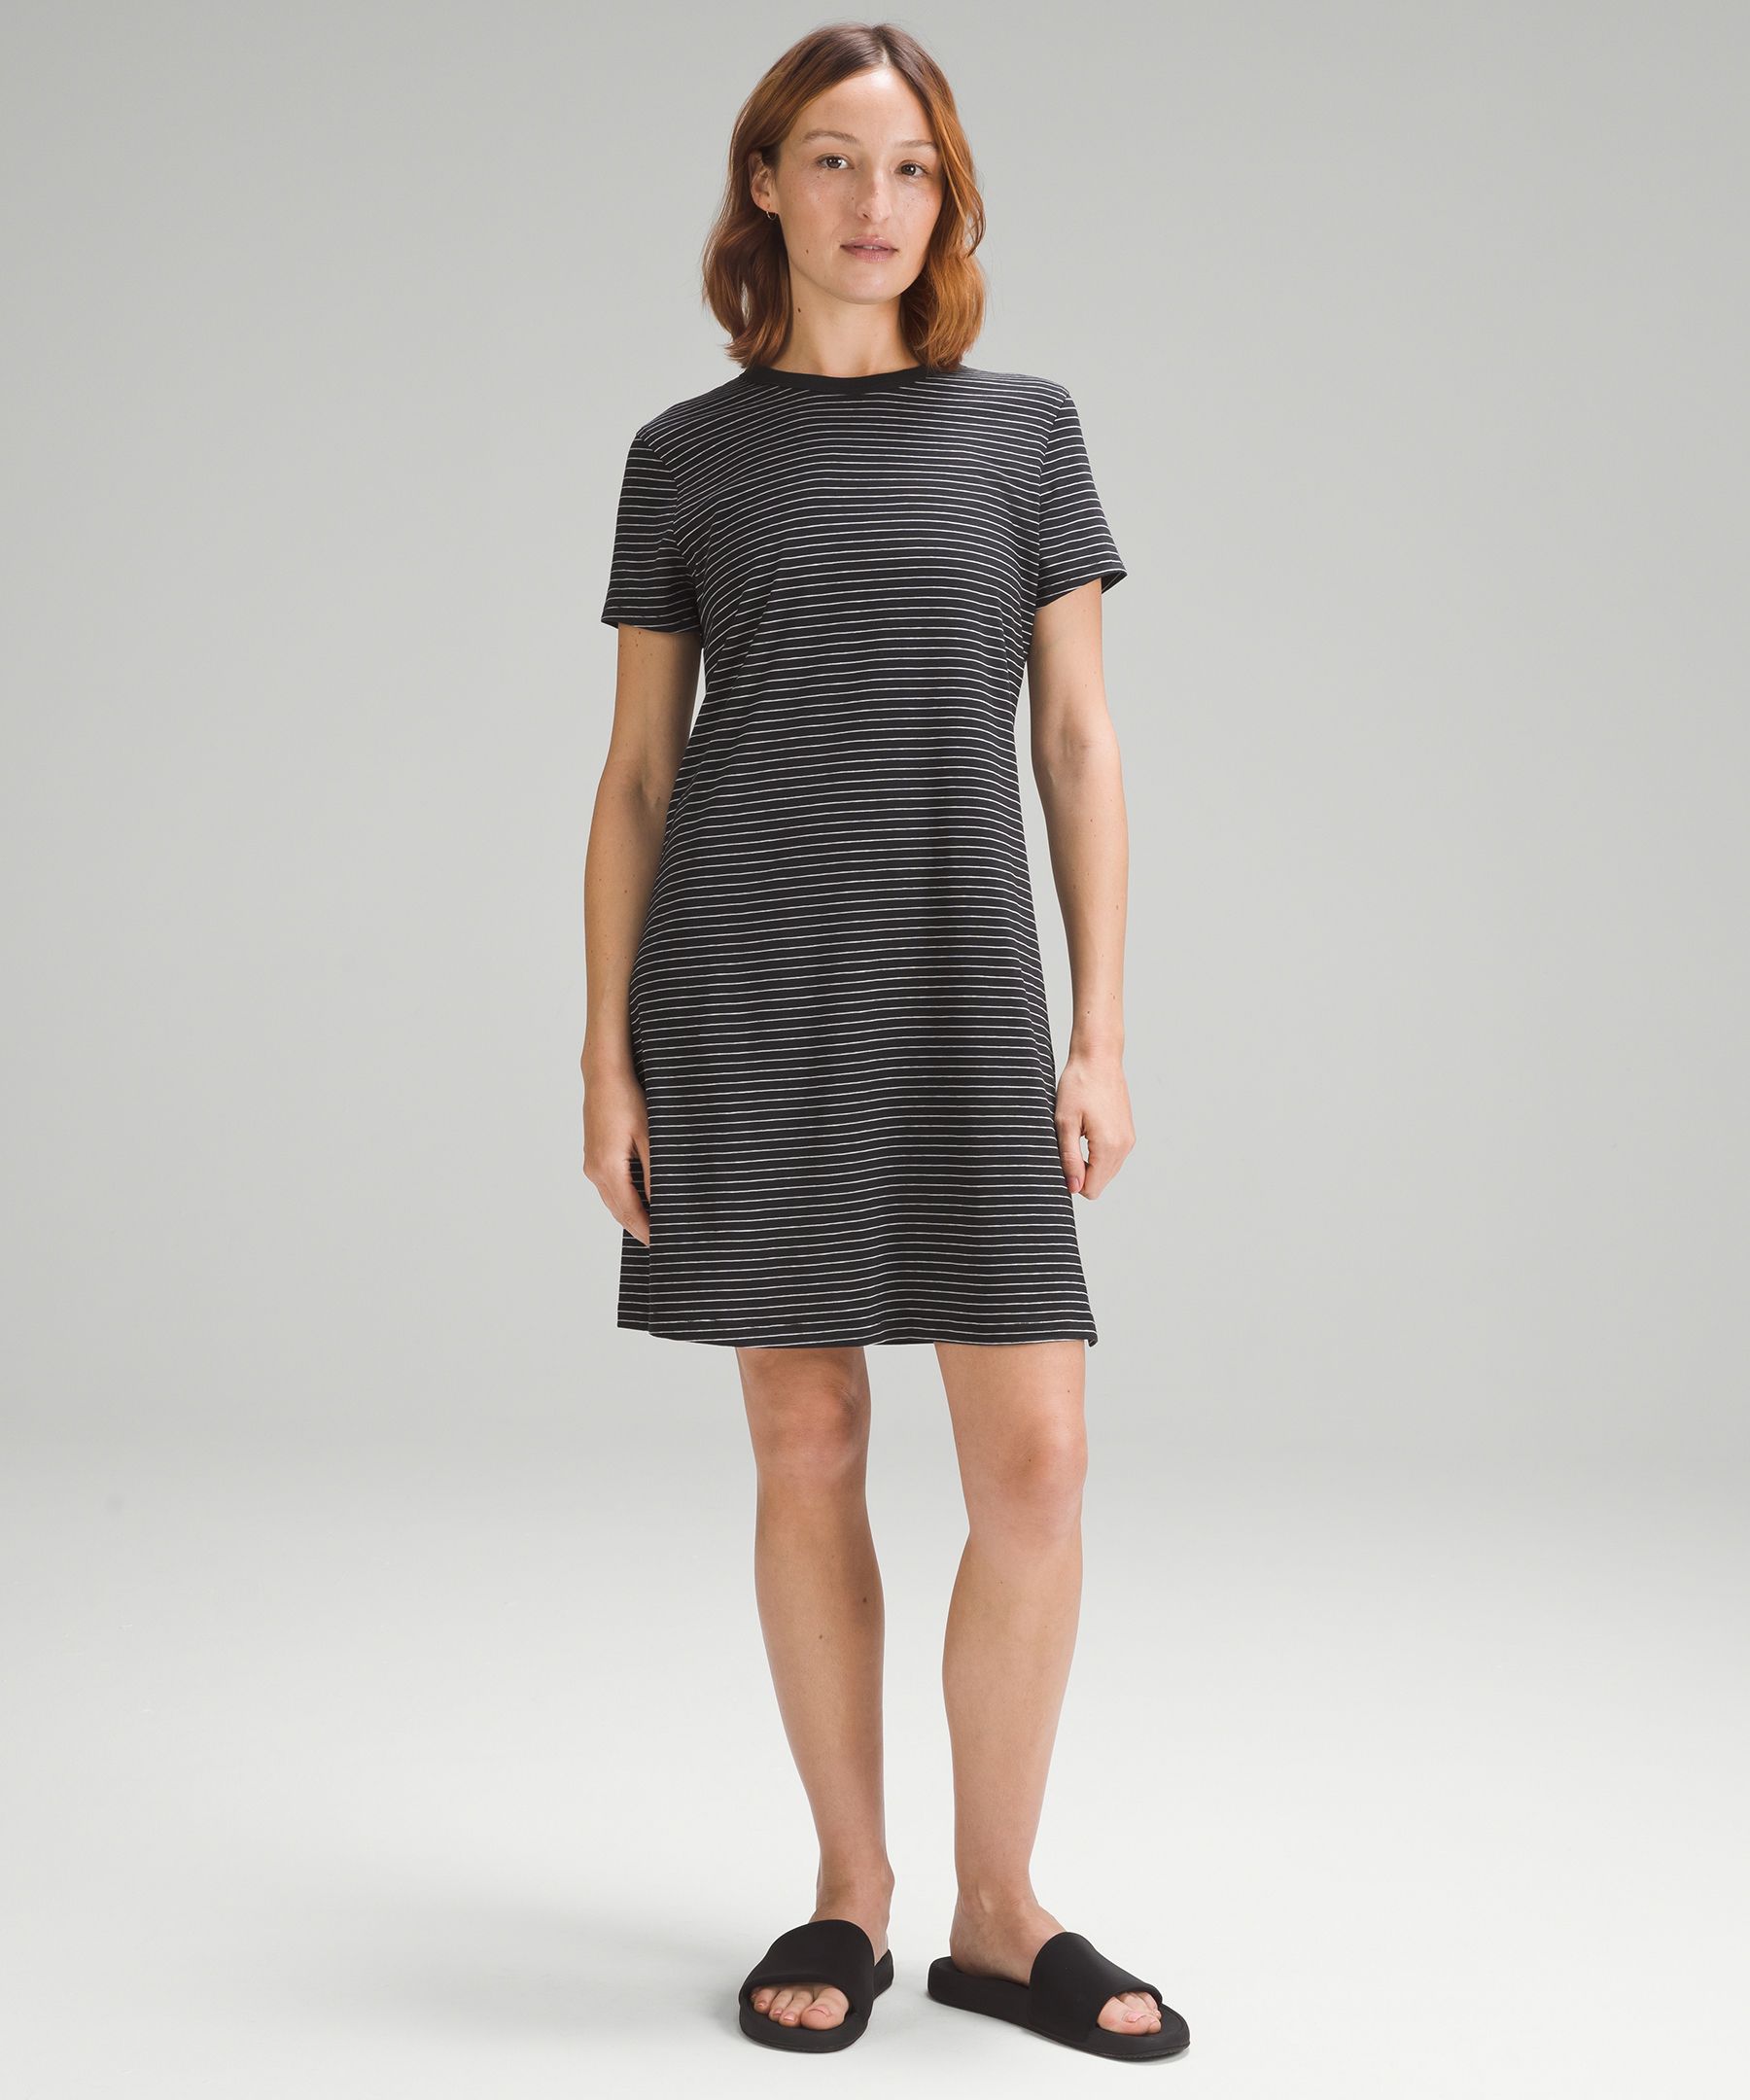 Lululemon Classic-fit Cotton-blend T-shirt Dress